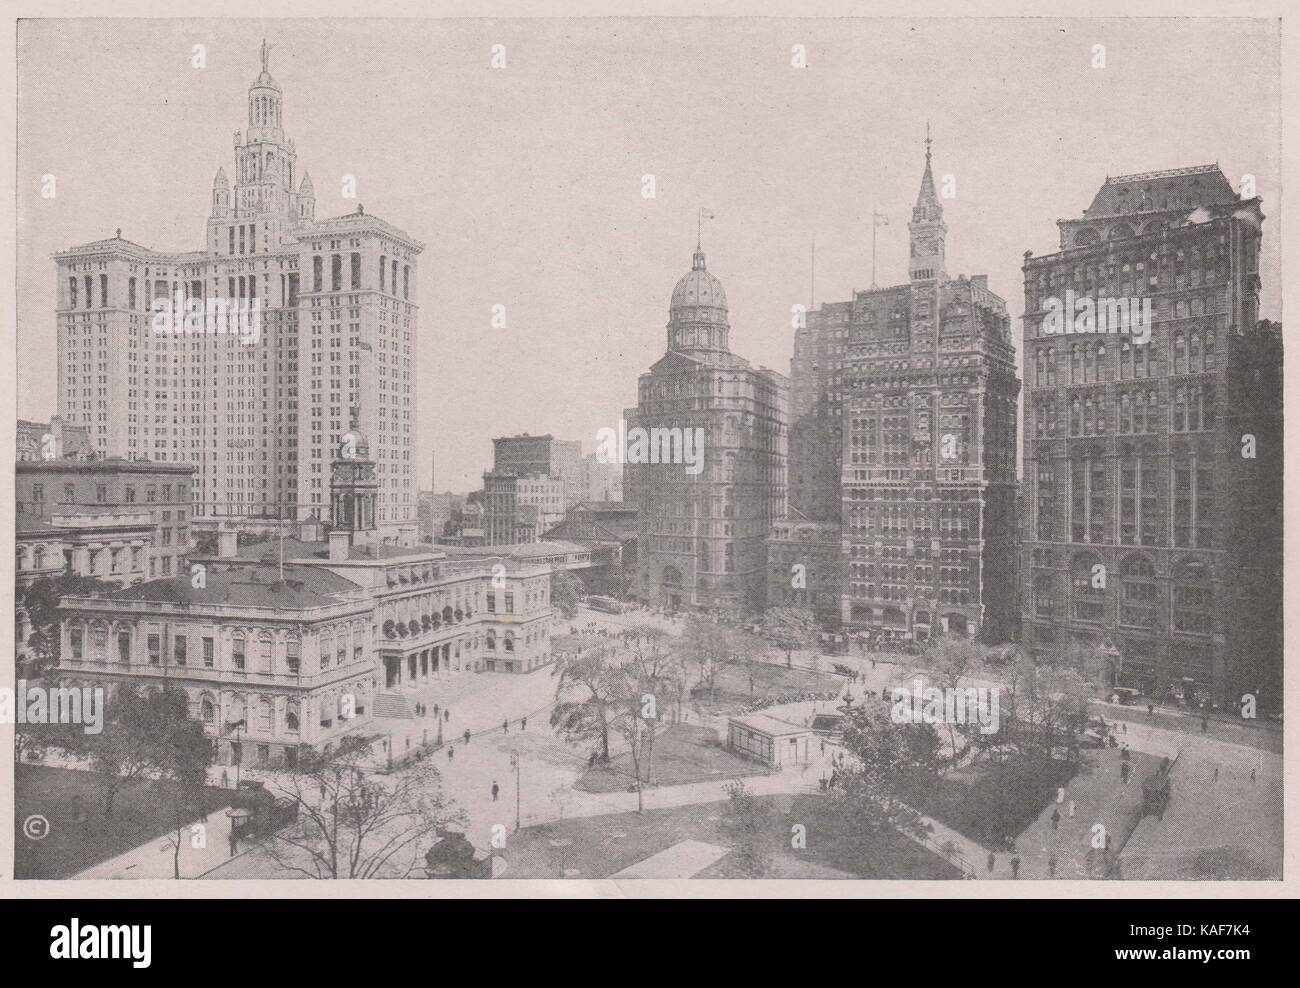 Rathaus und Zeitung Zeile. Anzeigen von rechts die alten Zeiten, Tribüne, Sonne und Welt Gebäude links. Dann kommt der New Yor... Stockfoto